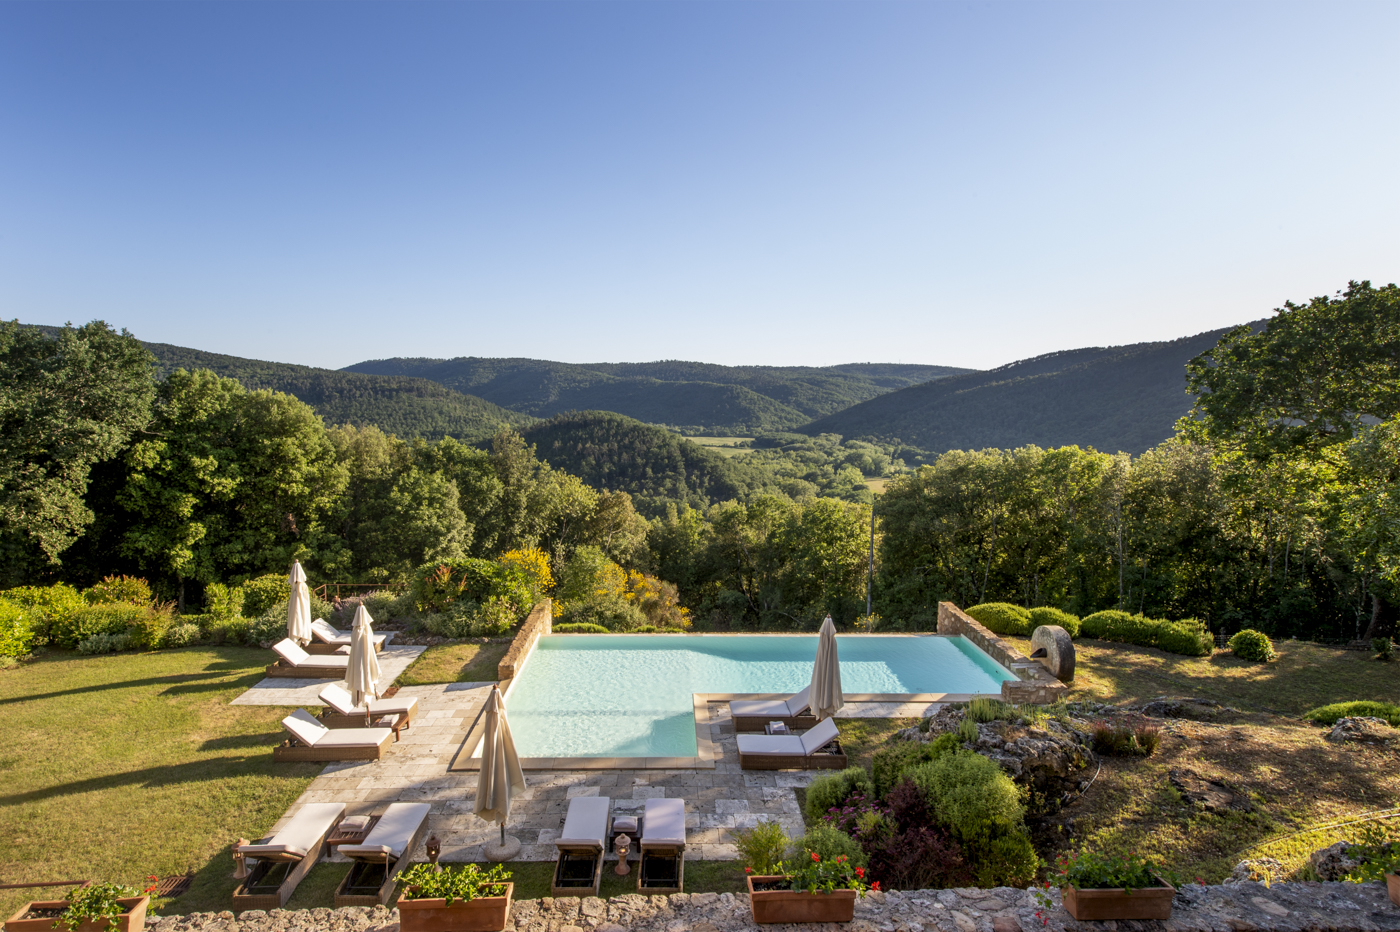 7 bedroom Villa in Tuscany - CASALIO VILLAS